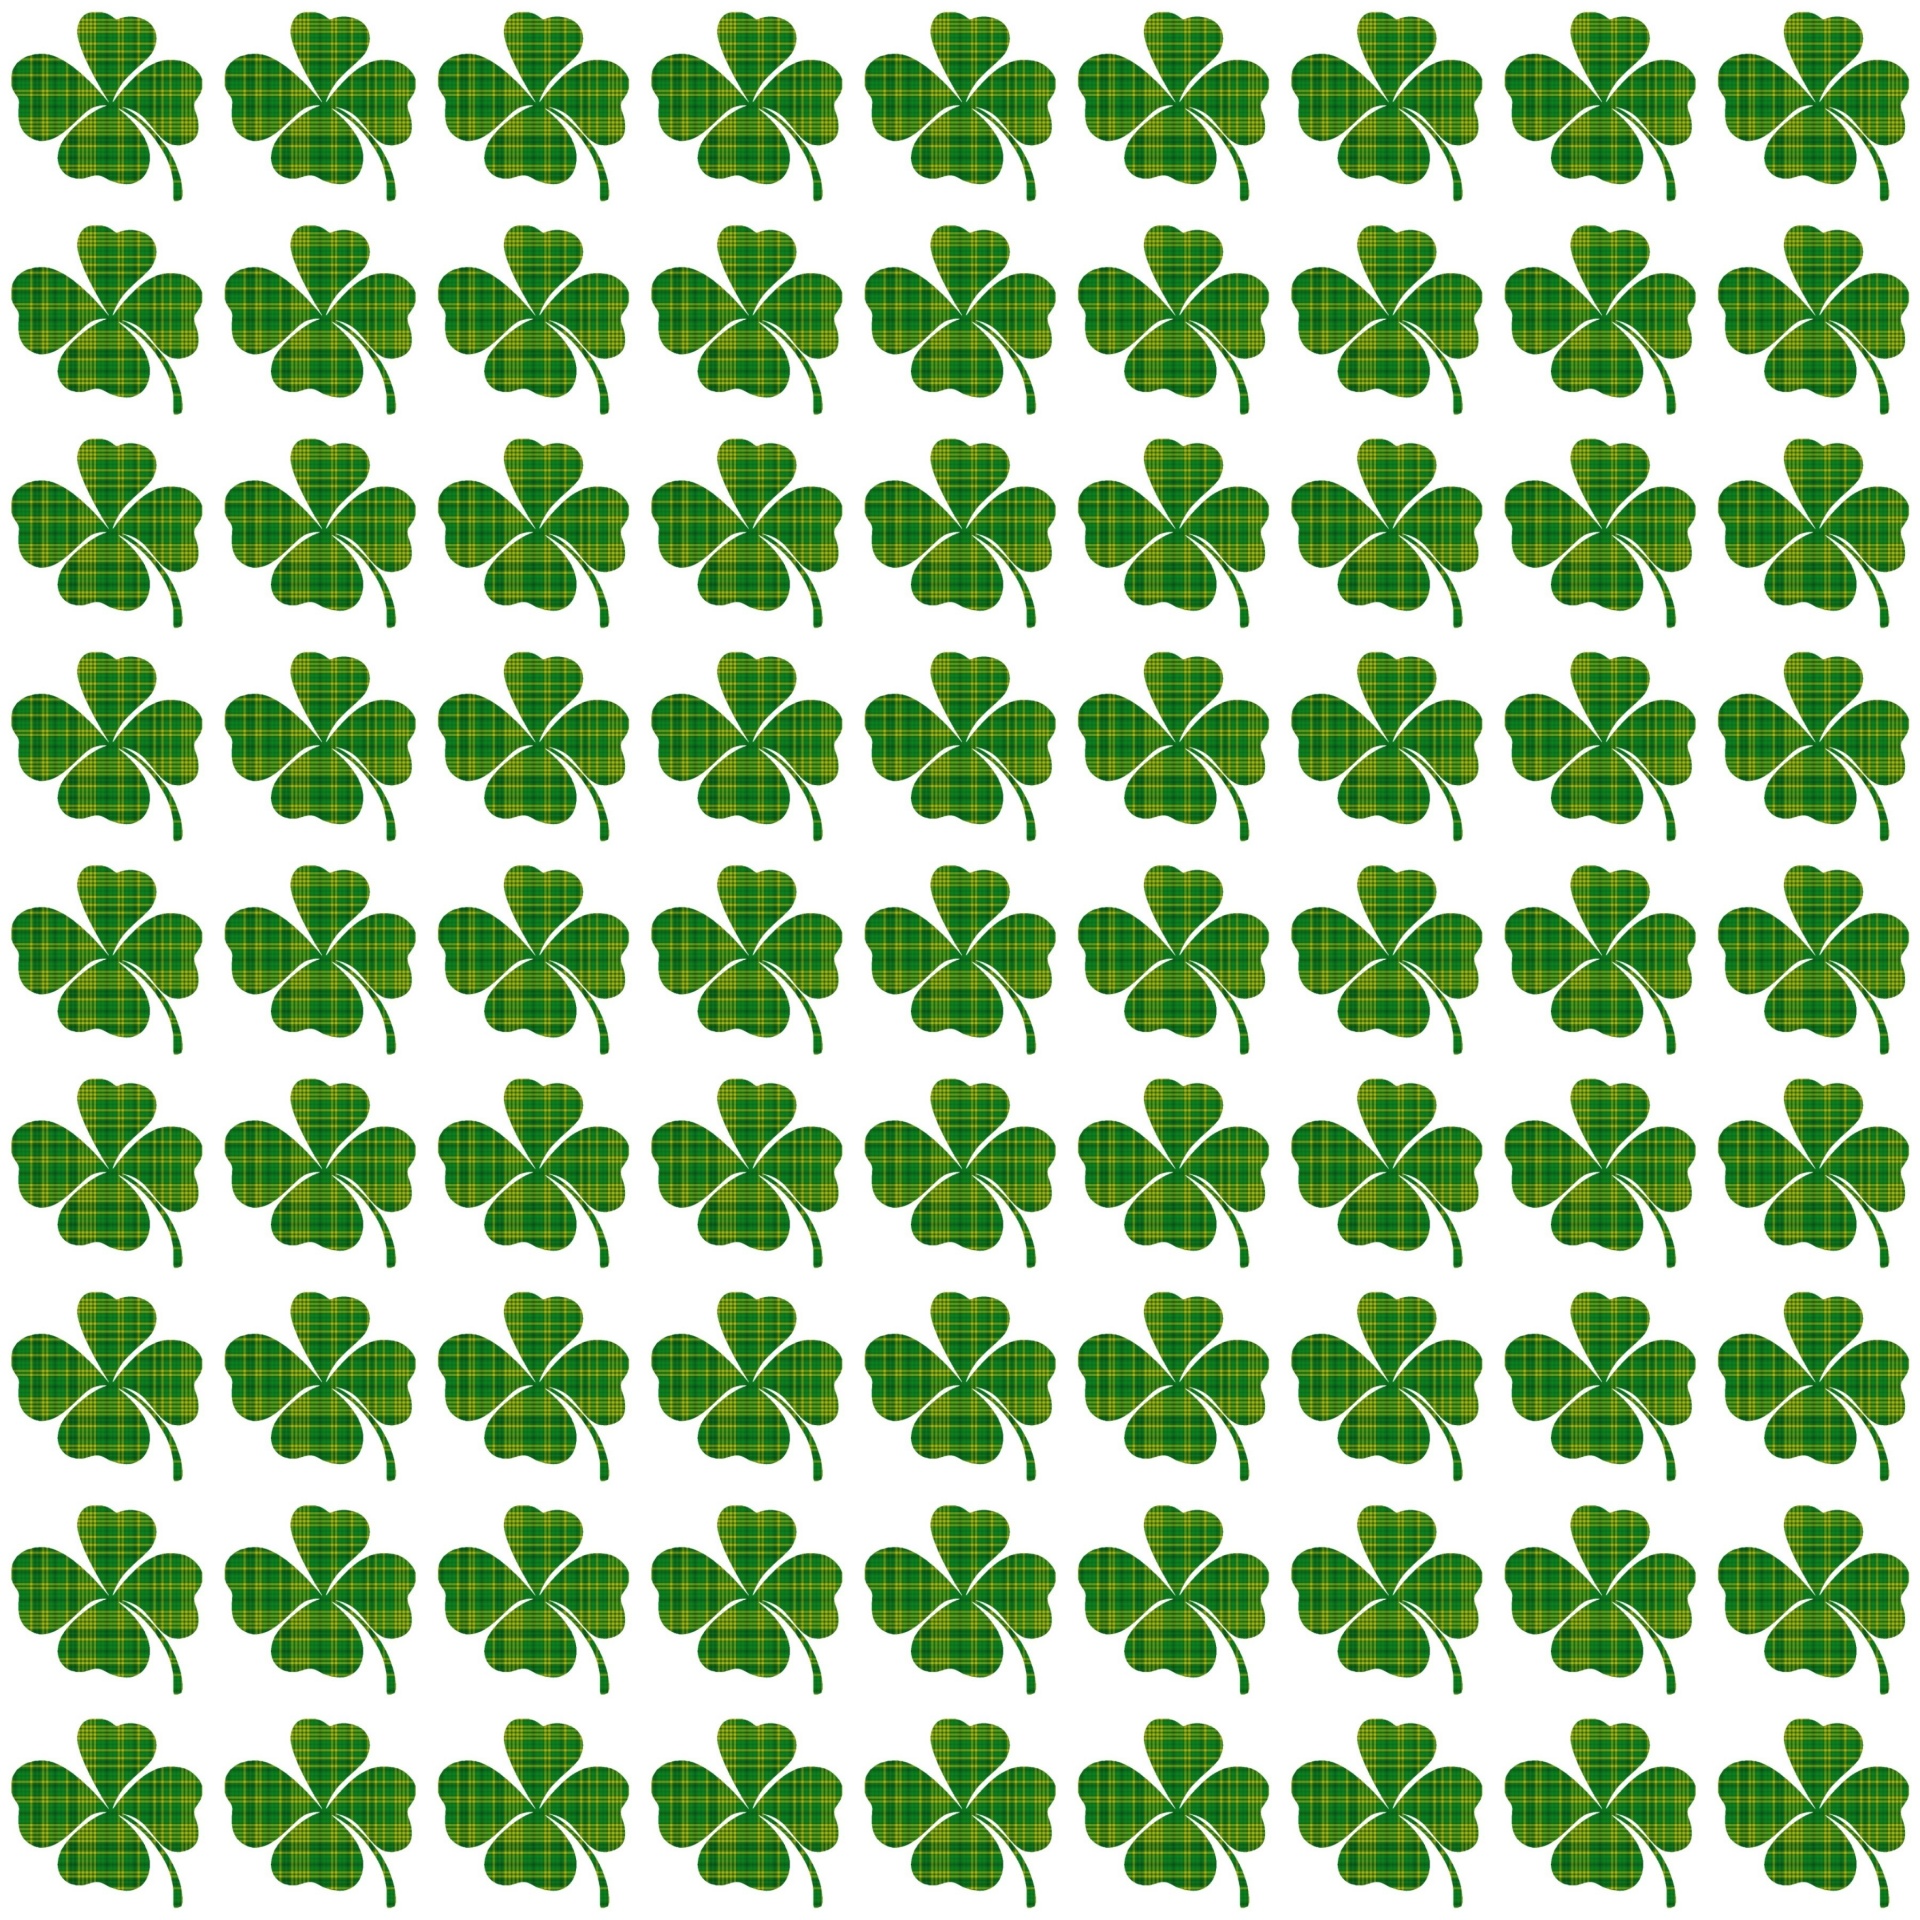 St. Patrick's Day Shamrocks background